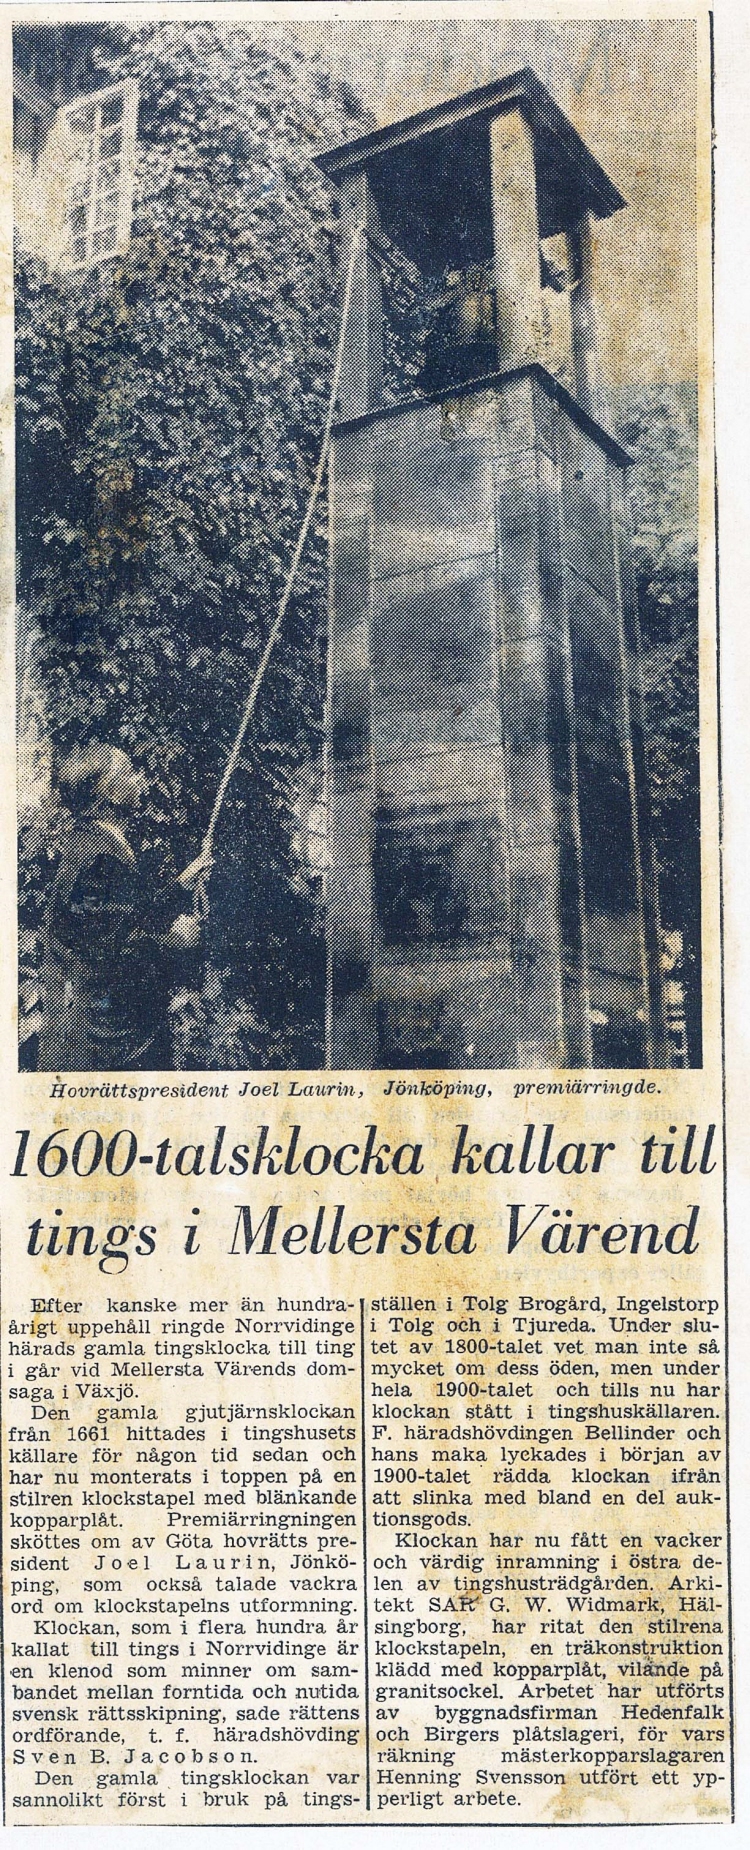 Tidningsartikel i Smålandsposten 1957 om Mellersta Värends 1600-talsklocka